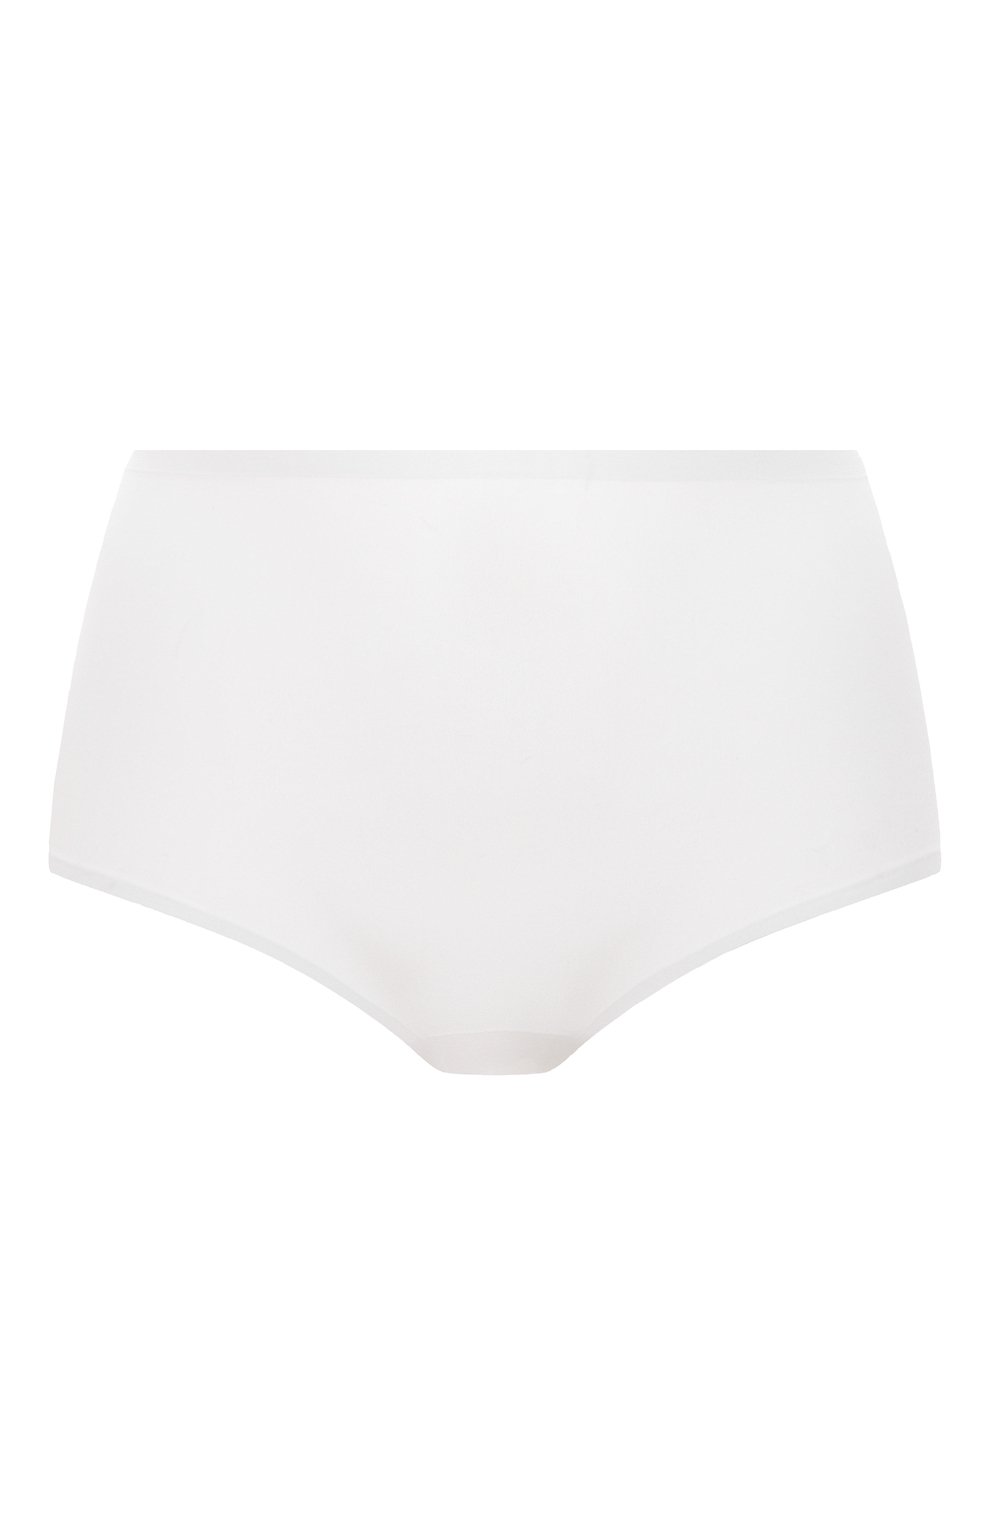 Женские трусы-шорты CHANTELLE белого цвета, арт. C11D70 | Фото 1 (Материал внешний: Синтетический материал)